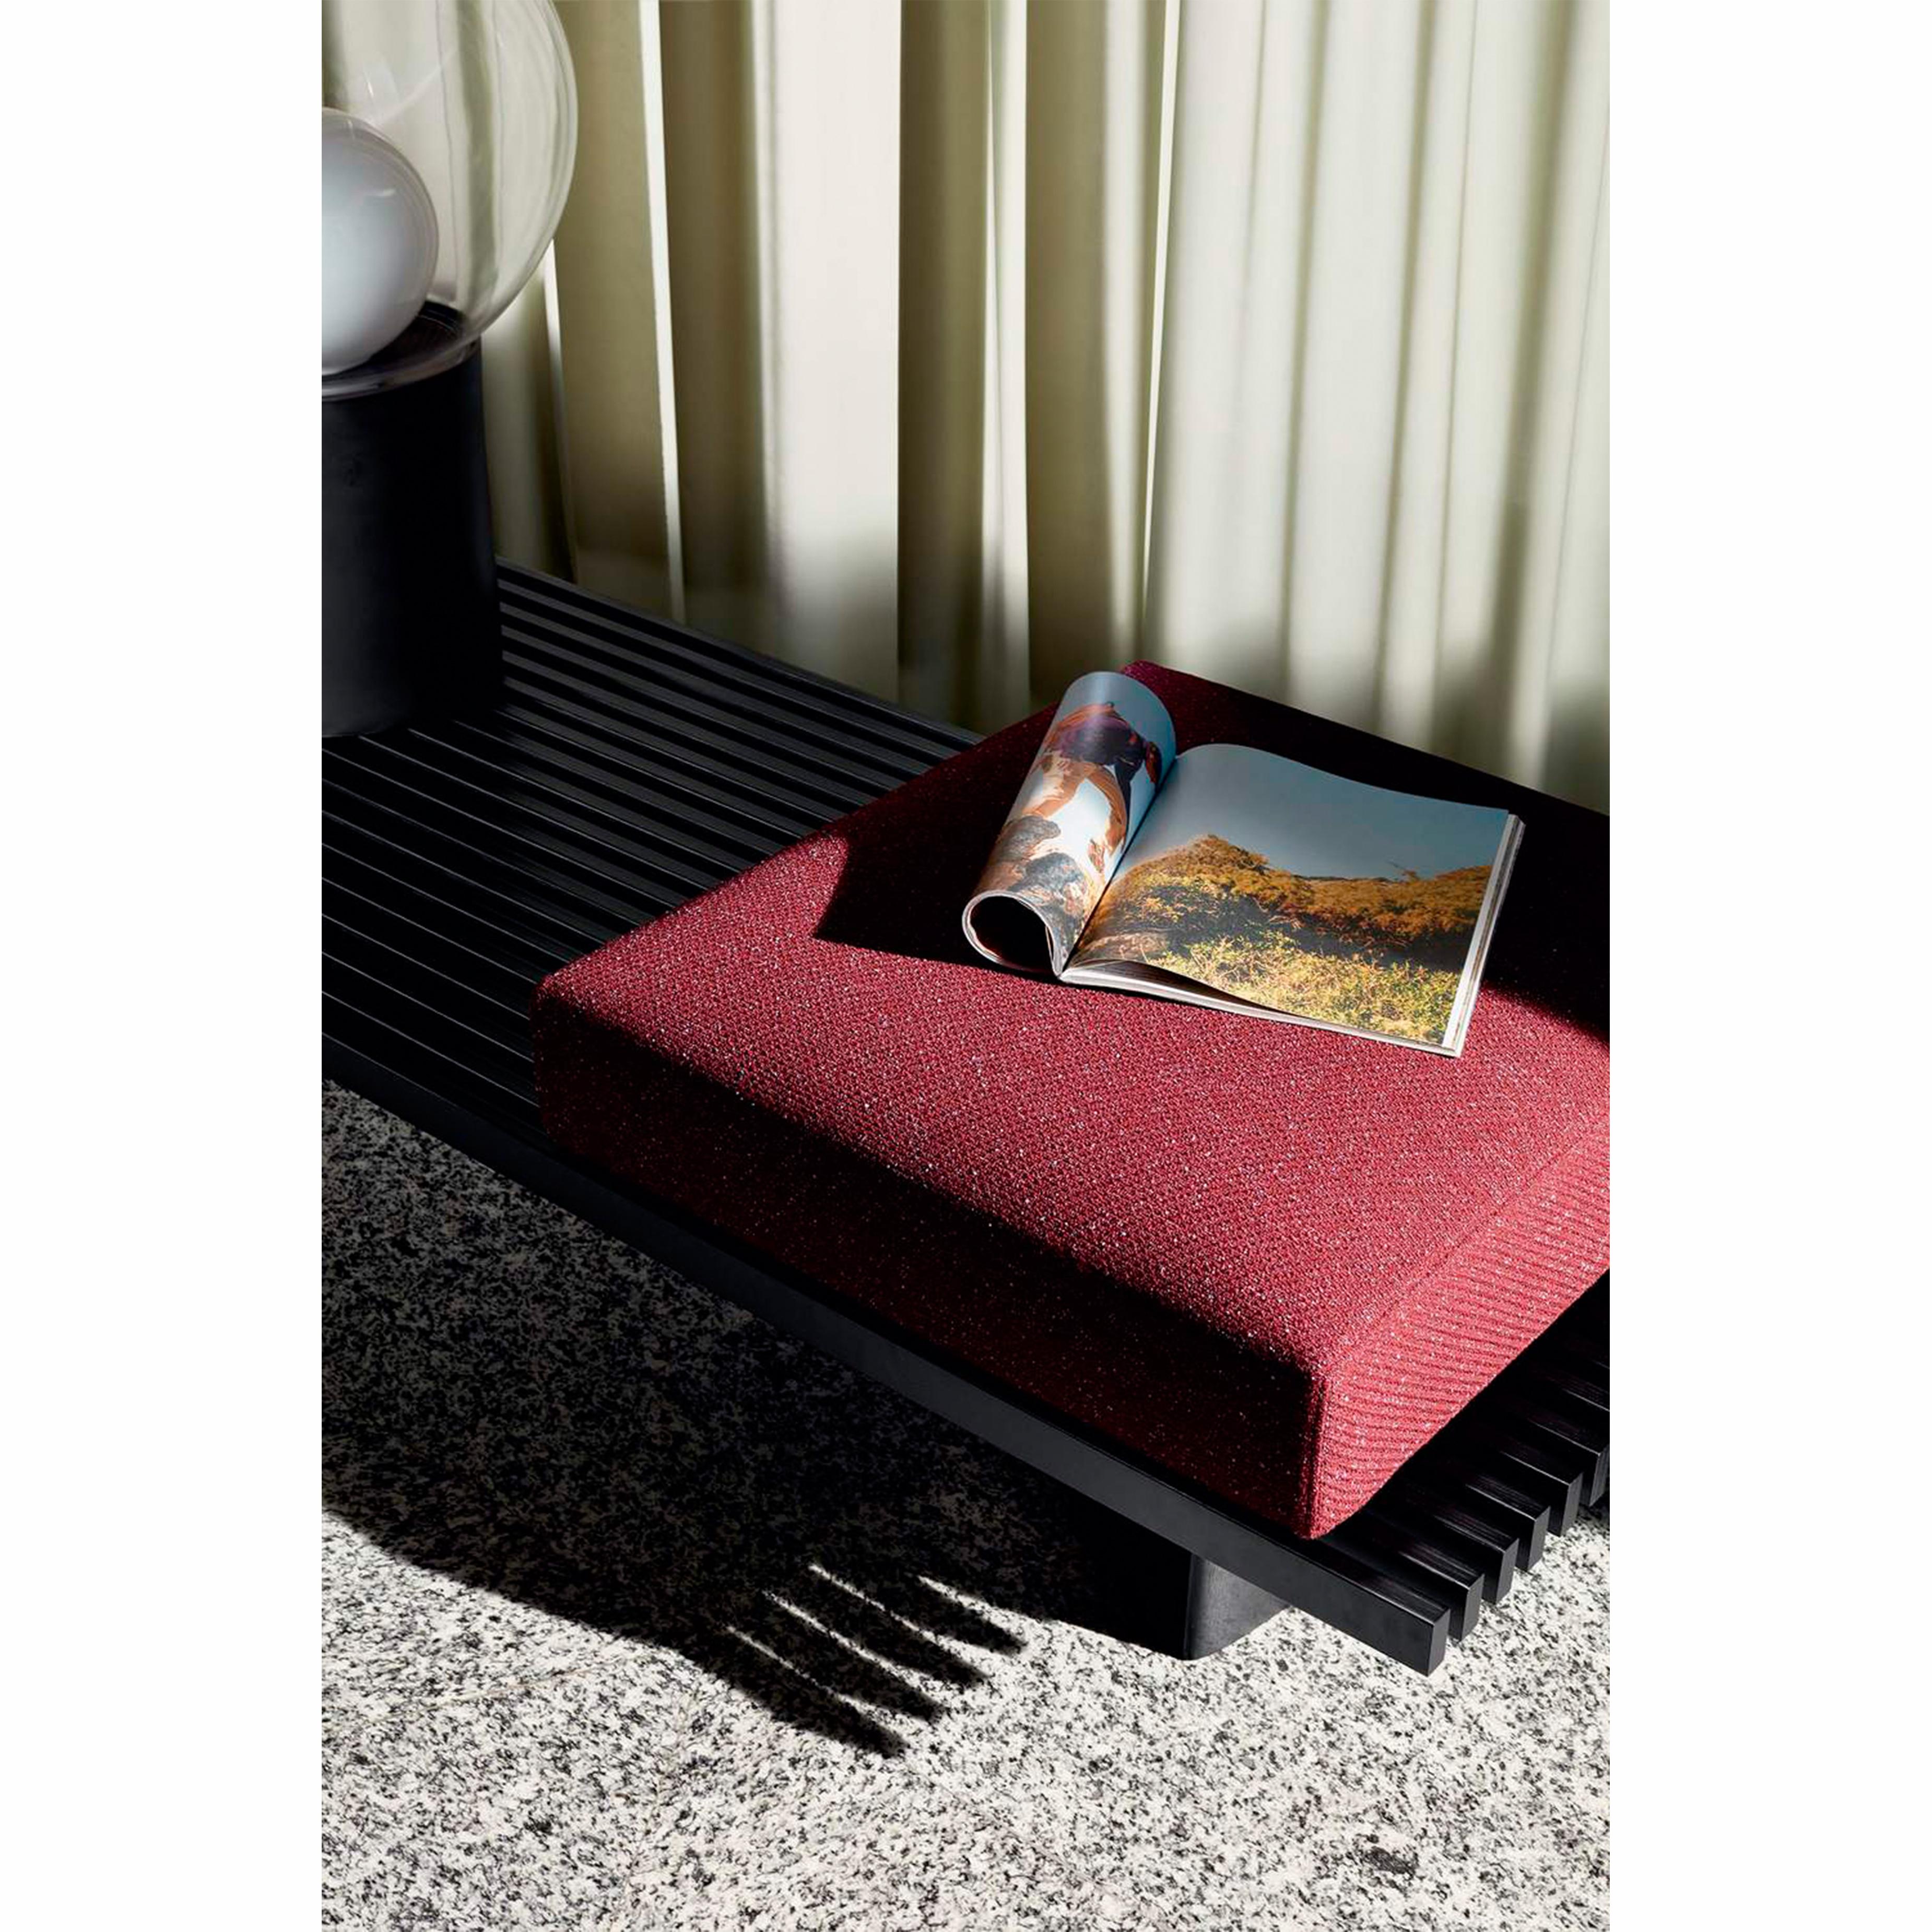 Modulares System, das als Sofa, Bank oder andere Optionen verwendet werden kann, entworfen von Charlotte Perriand im Jahr 1953. 2004 von Cassina neu aufgelegt. 
Hergestellt von Cassina in Italien.

Refolo ist ein modulares System mit einfachen,